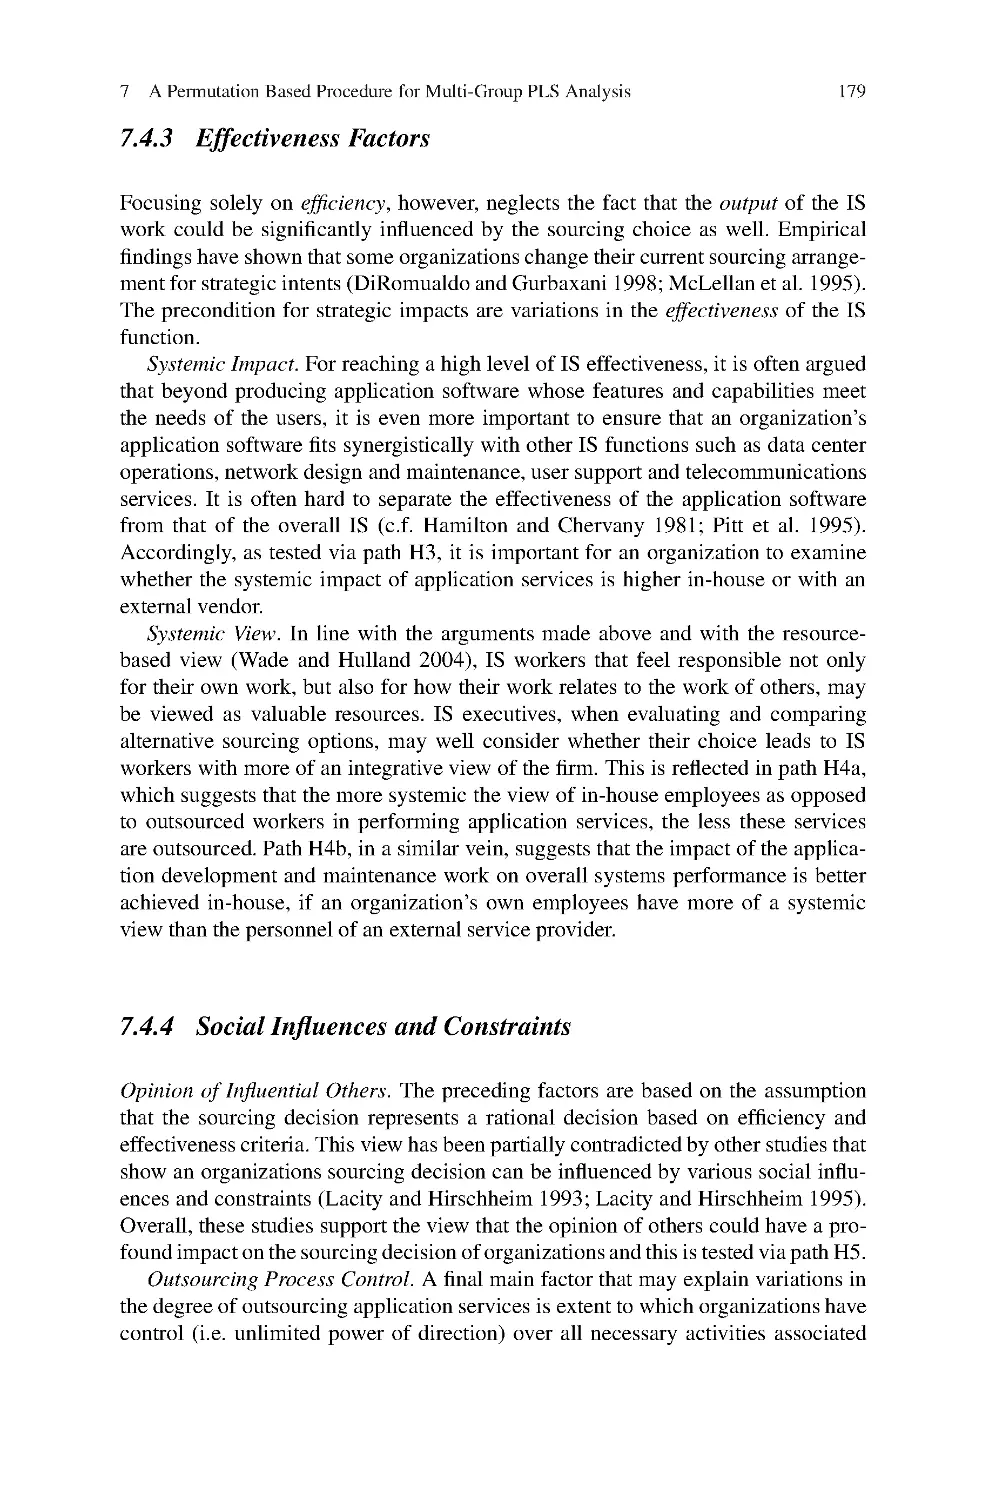 7.4.3 Effectiveness Factors
7.4.4 Social Influences and Constraints